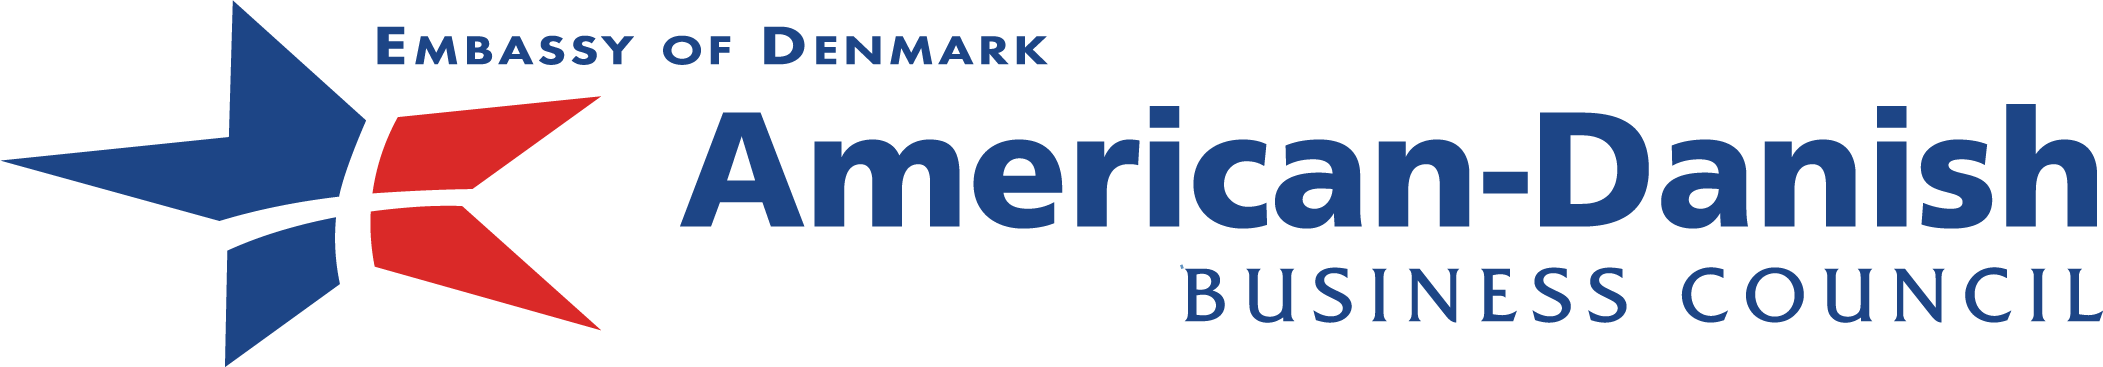 American-Danish Business Council Joins CMMC Academy as an International Alliance Member